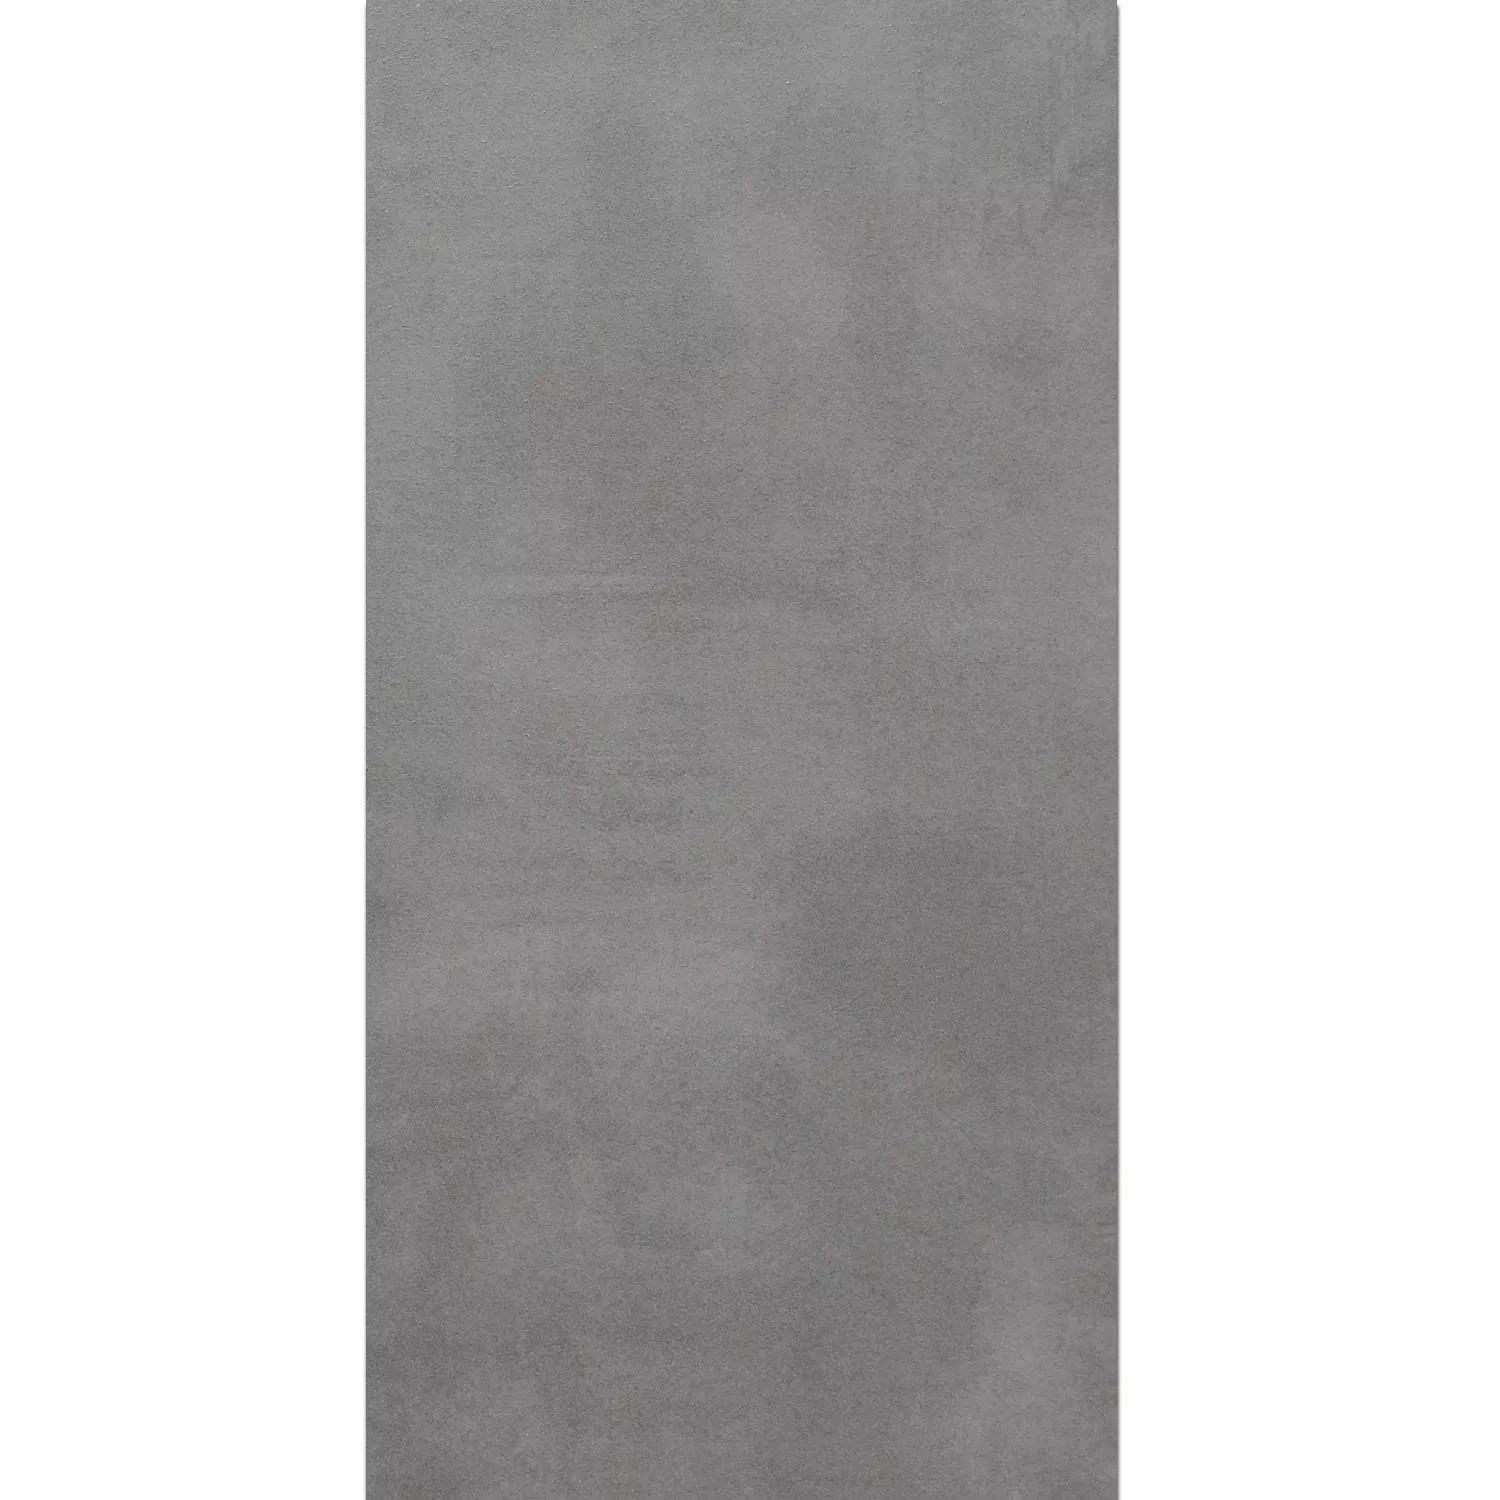 Lajes de Terraço Zeus Olhar Concreto Grey 60x90cm